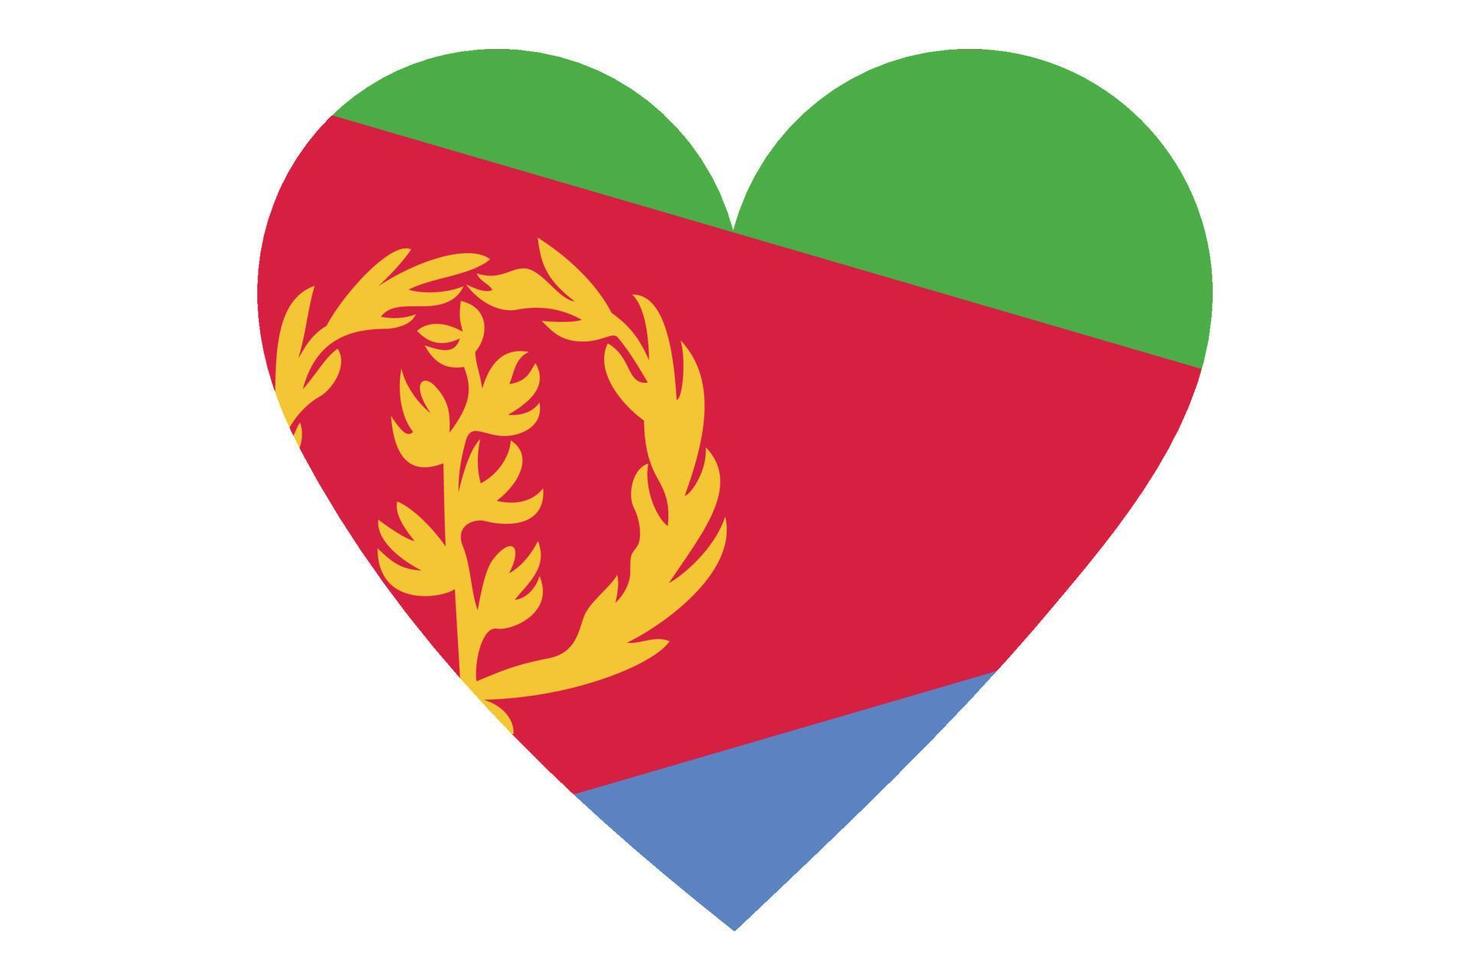 Heart flag vector of Eritrea on white background.